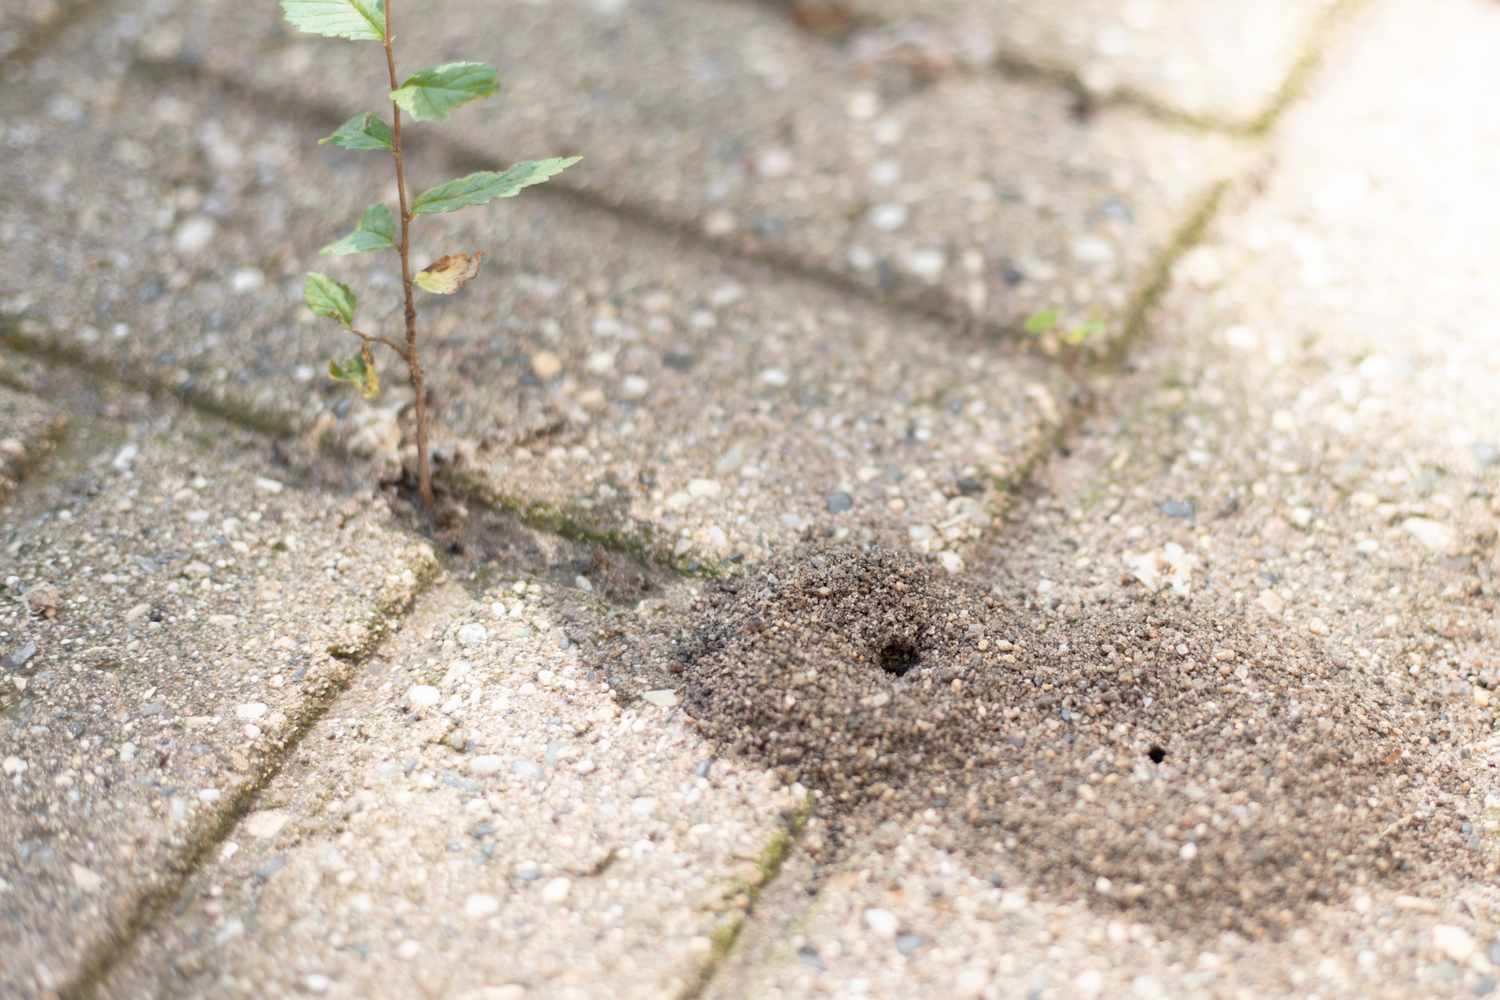 Ameisennest in einem Loch zwischen Zementblockrissen